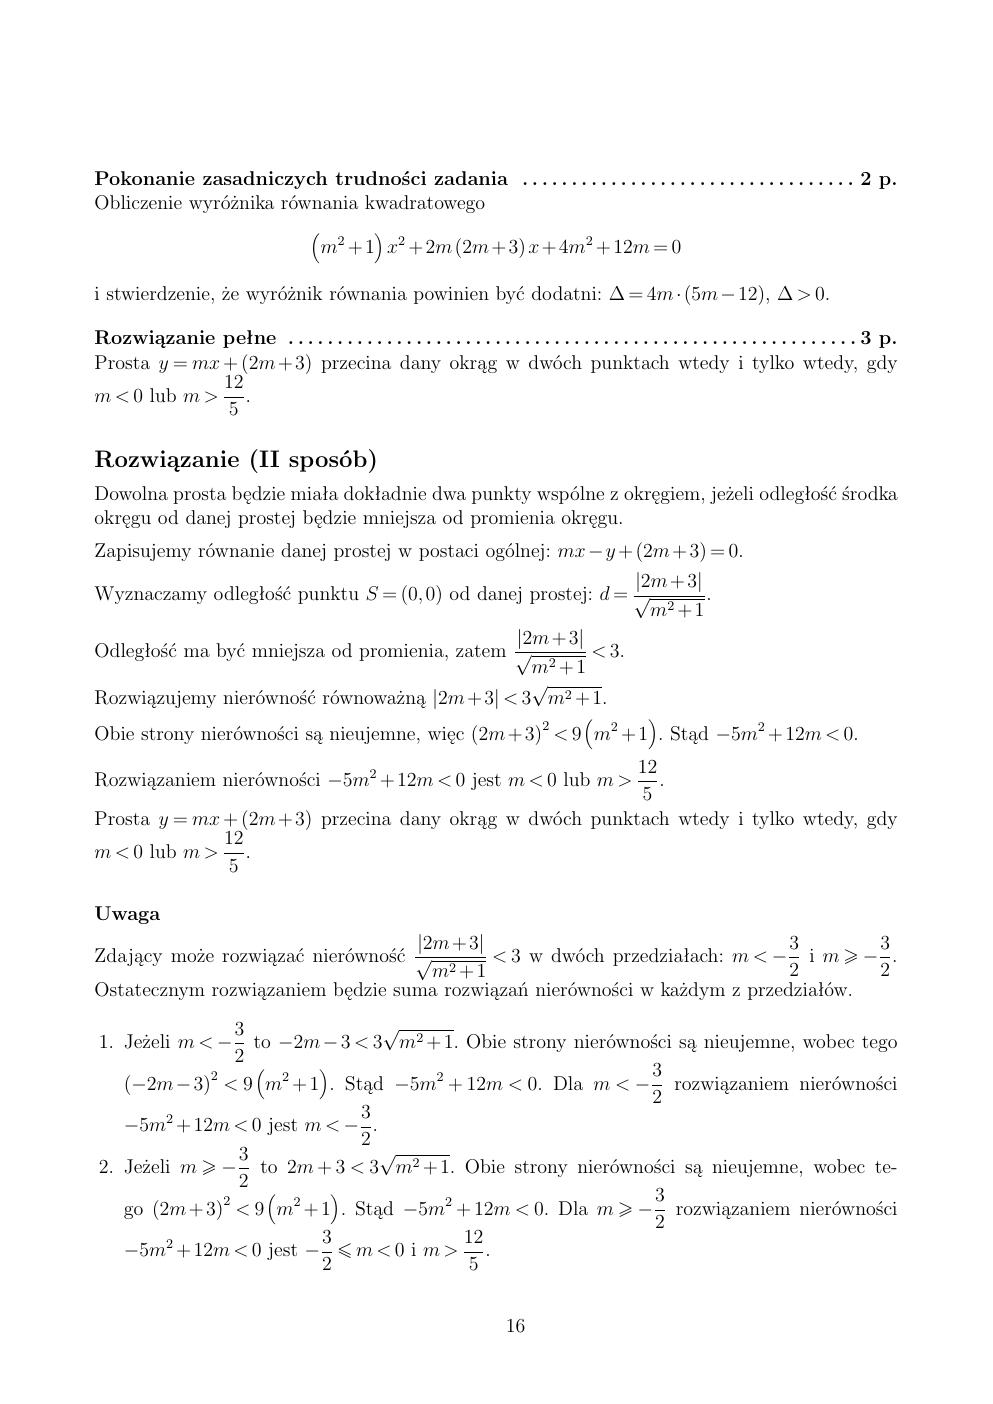 zasady oceniania - odpowiedzi - matematyka rozszerzony - matura 2015 przykładowa-16